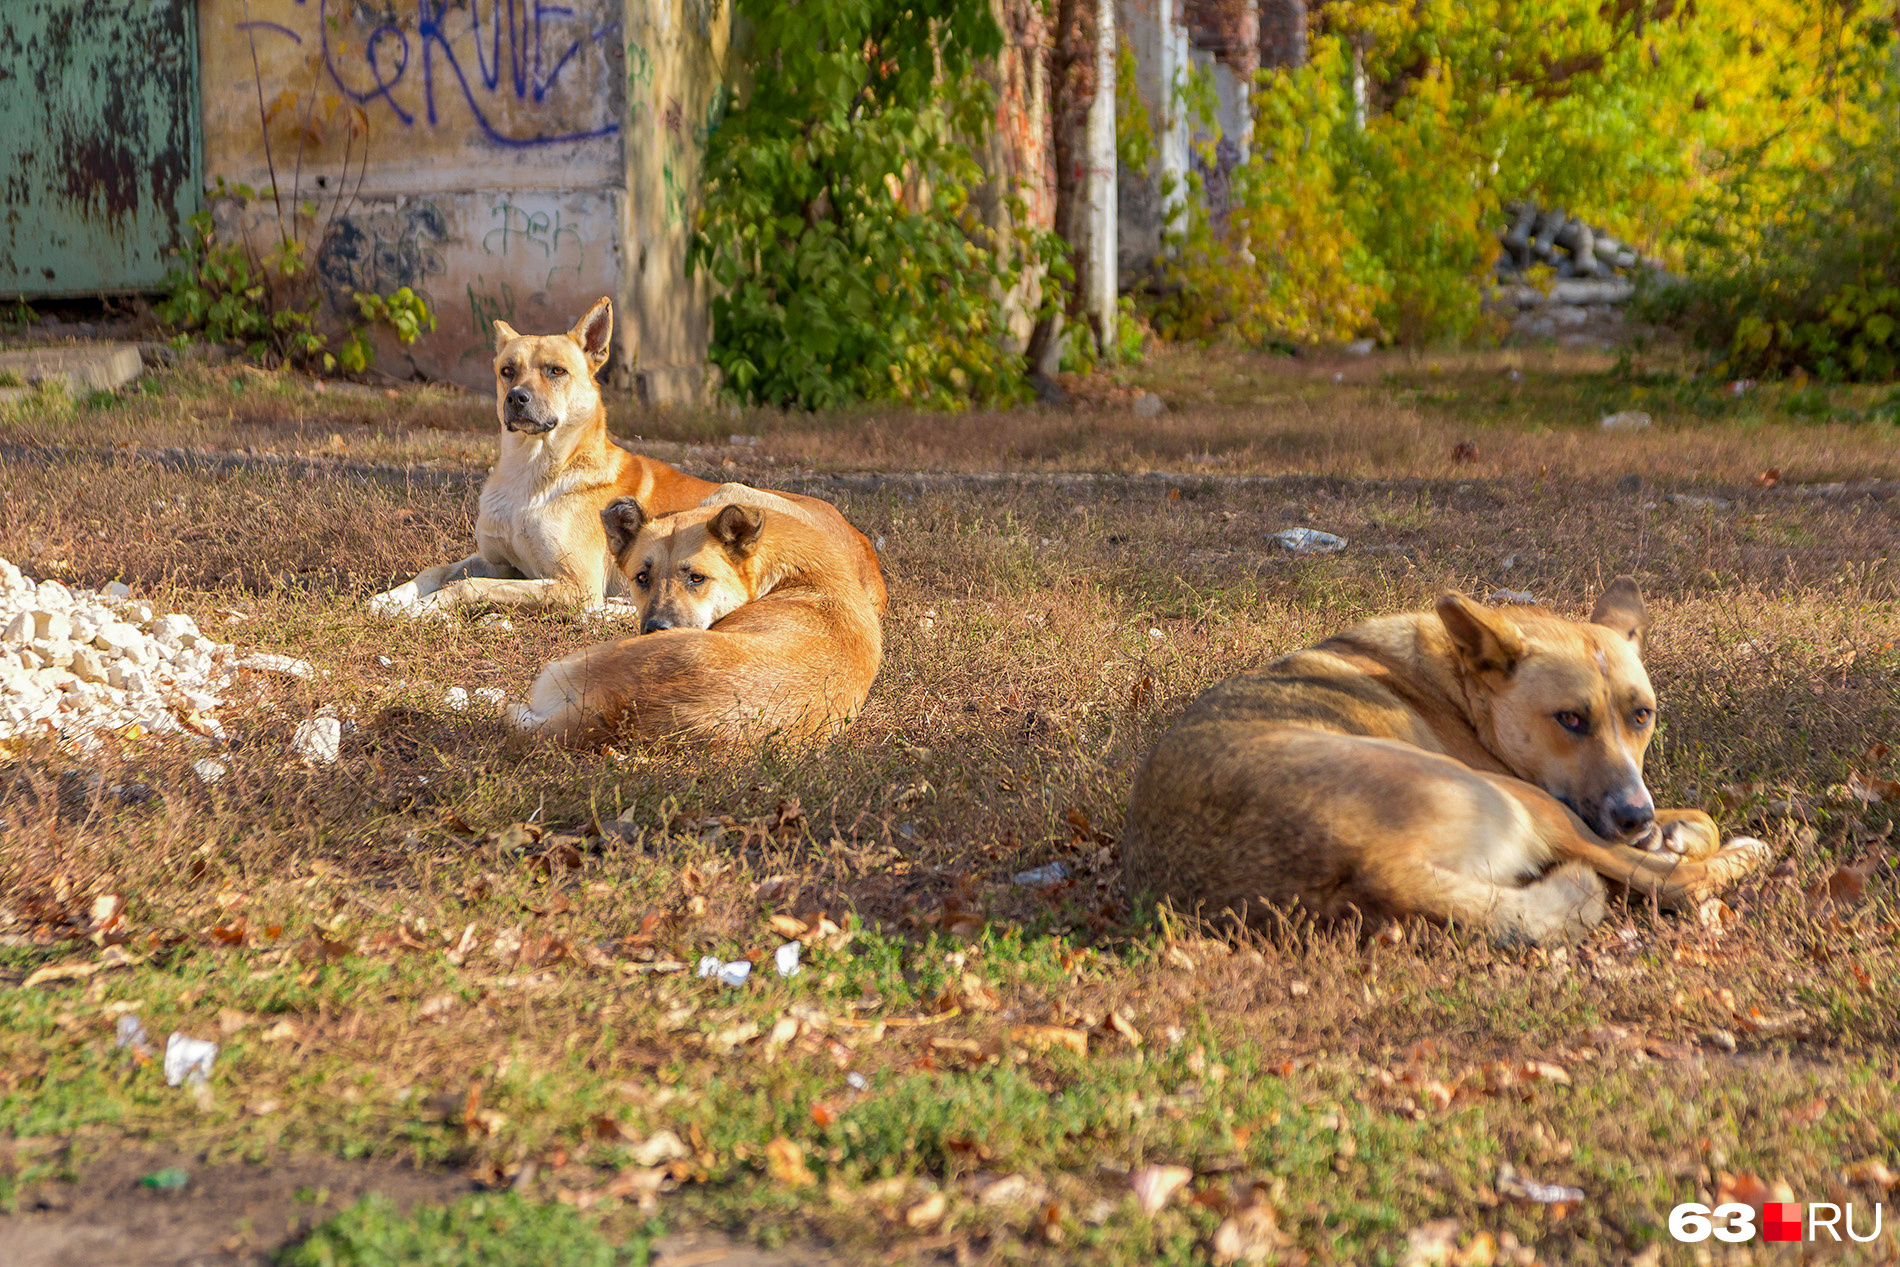 Одни зоозащитники говорят, что собаки в городе необходимы, чтобы сокращать популяцию крыс, другие обвиняют их в убийстве кошек и диких животных в пригороде